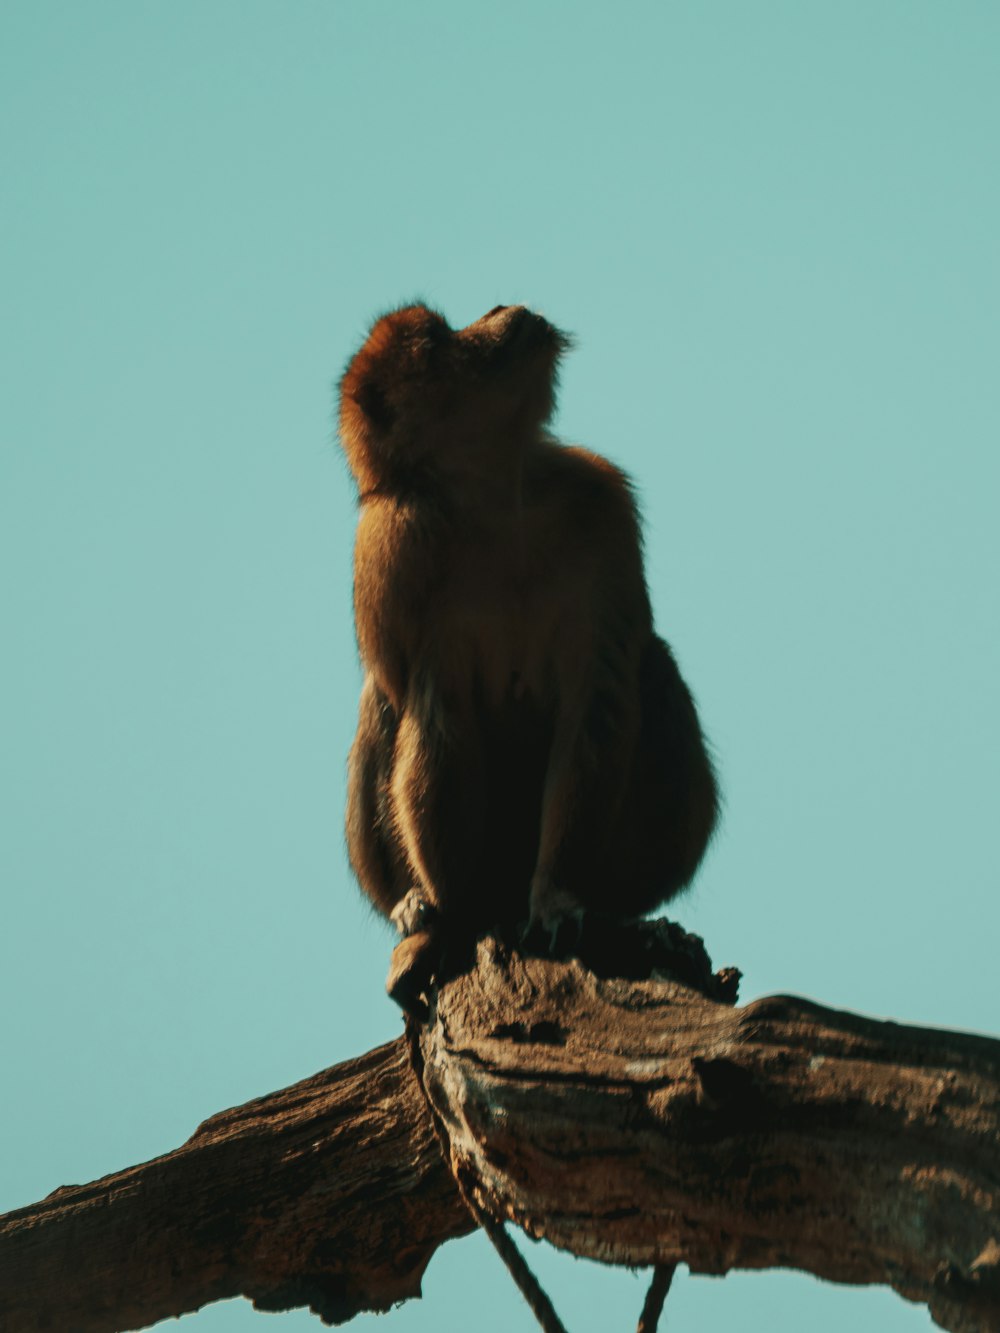 singe brun assis sur une bûche de bois brun sous le ciel bleu pendant la journée